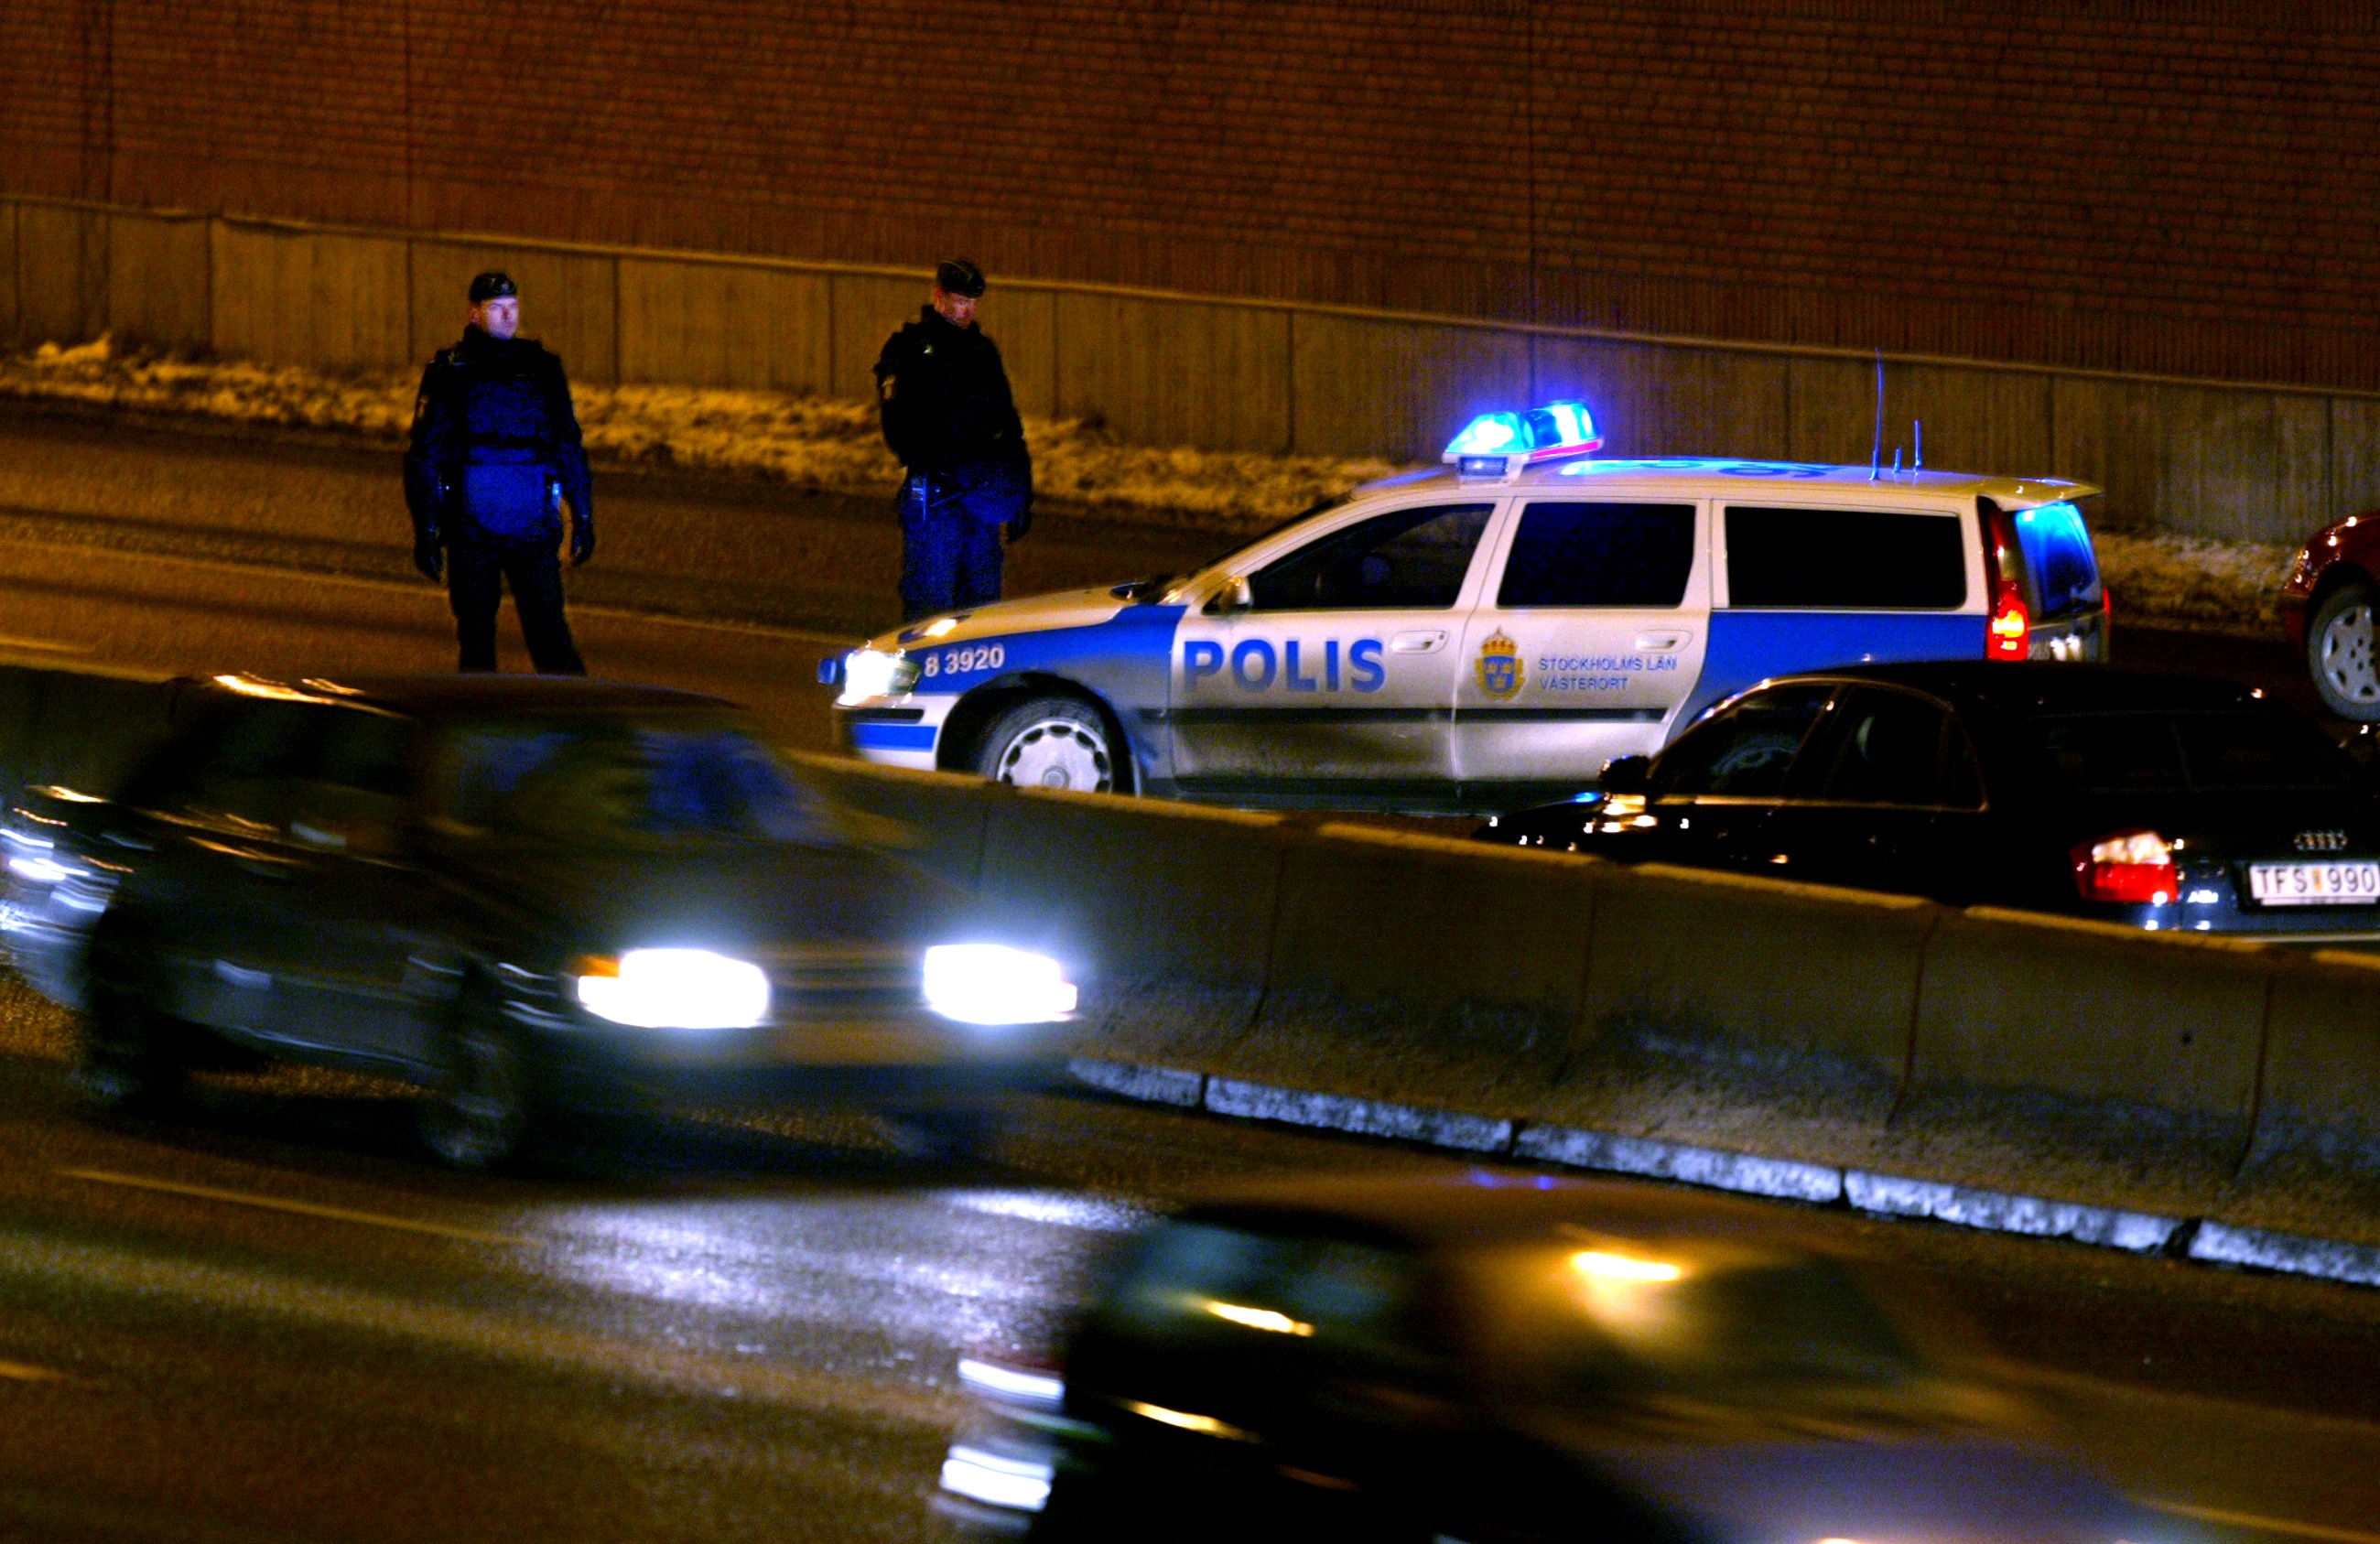 Fredrik Jansson stoppades av polis och ansåg att han kränktes.